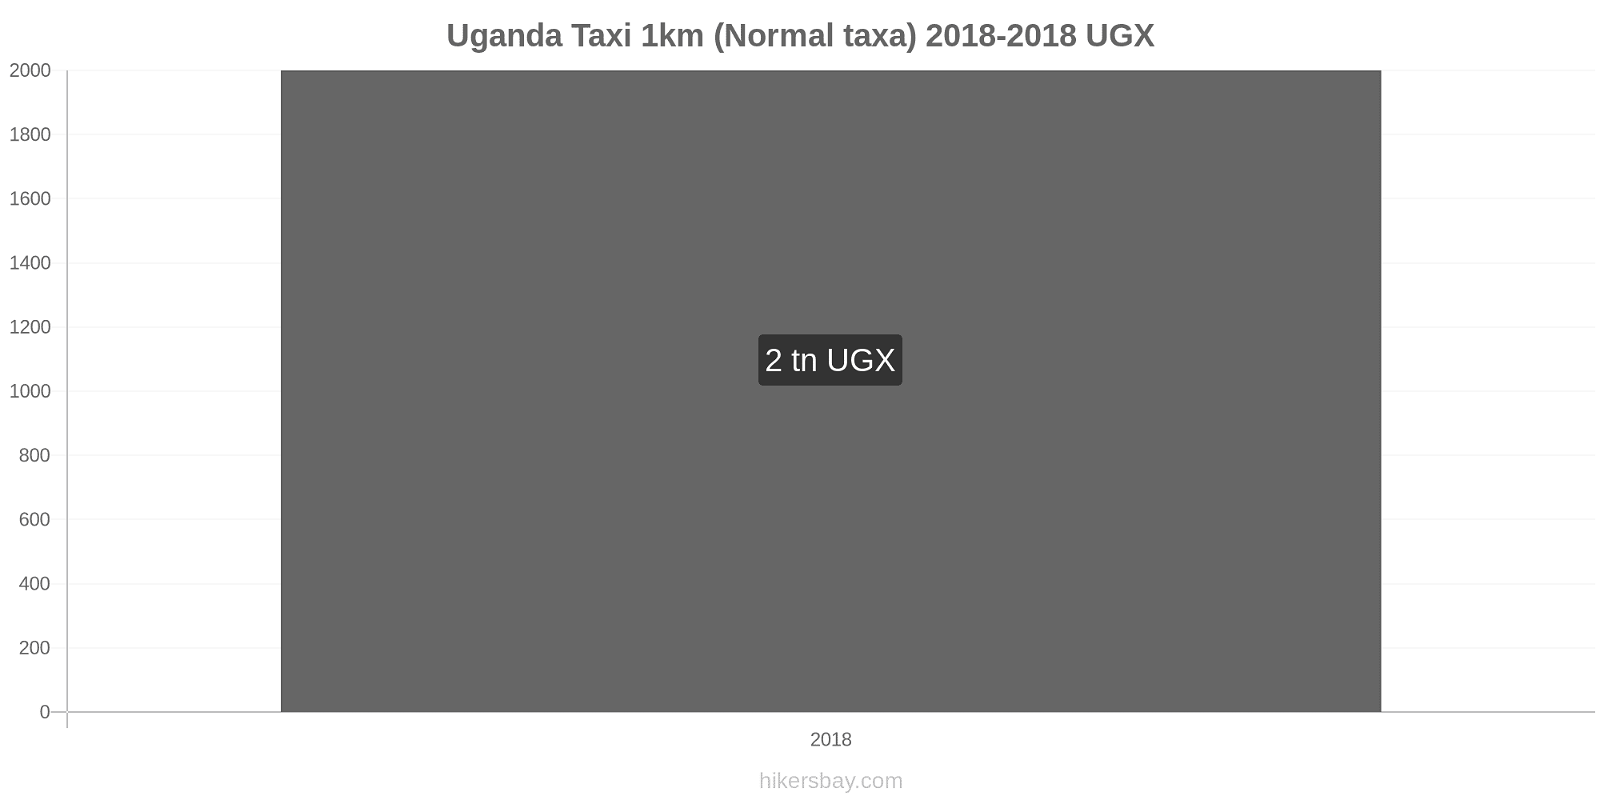 Uganda prisändringar Taxi 1km (Normal taxa) hikersbay.com